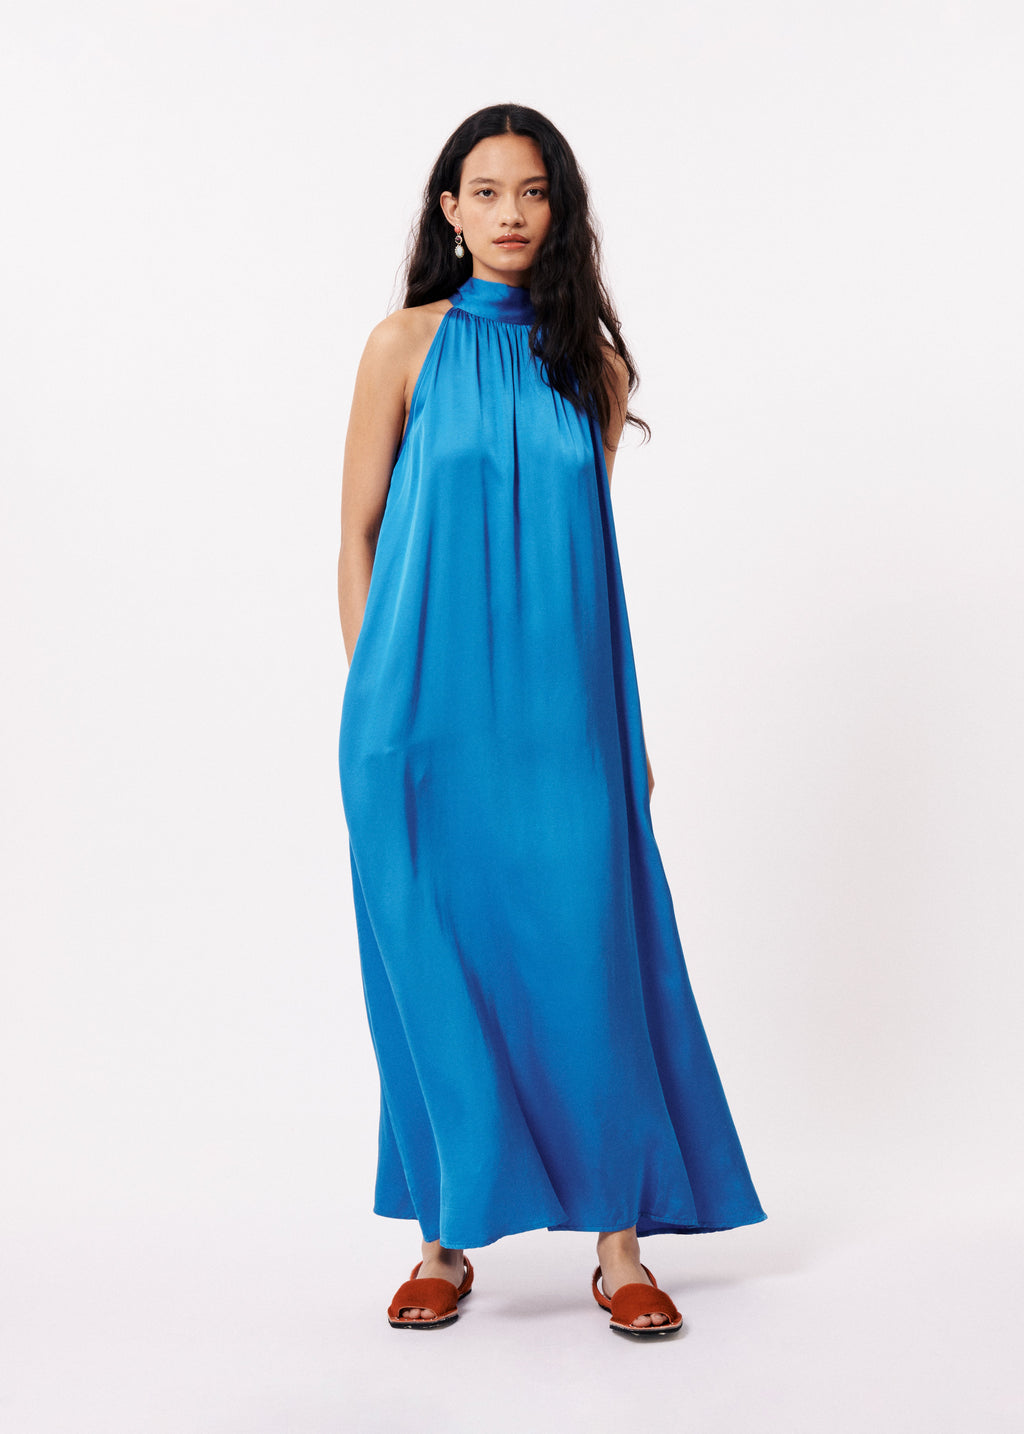 Blue Alberya Satin Dress